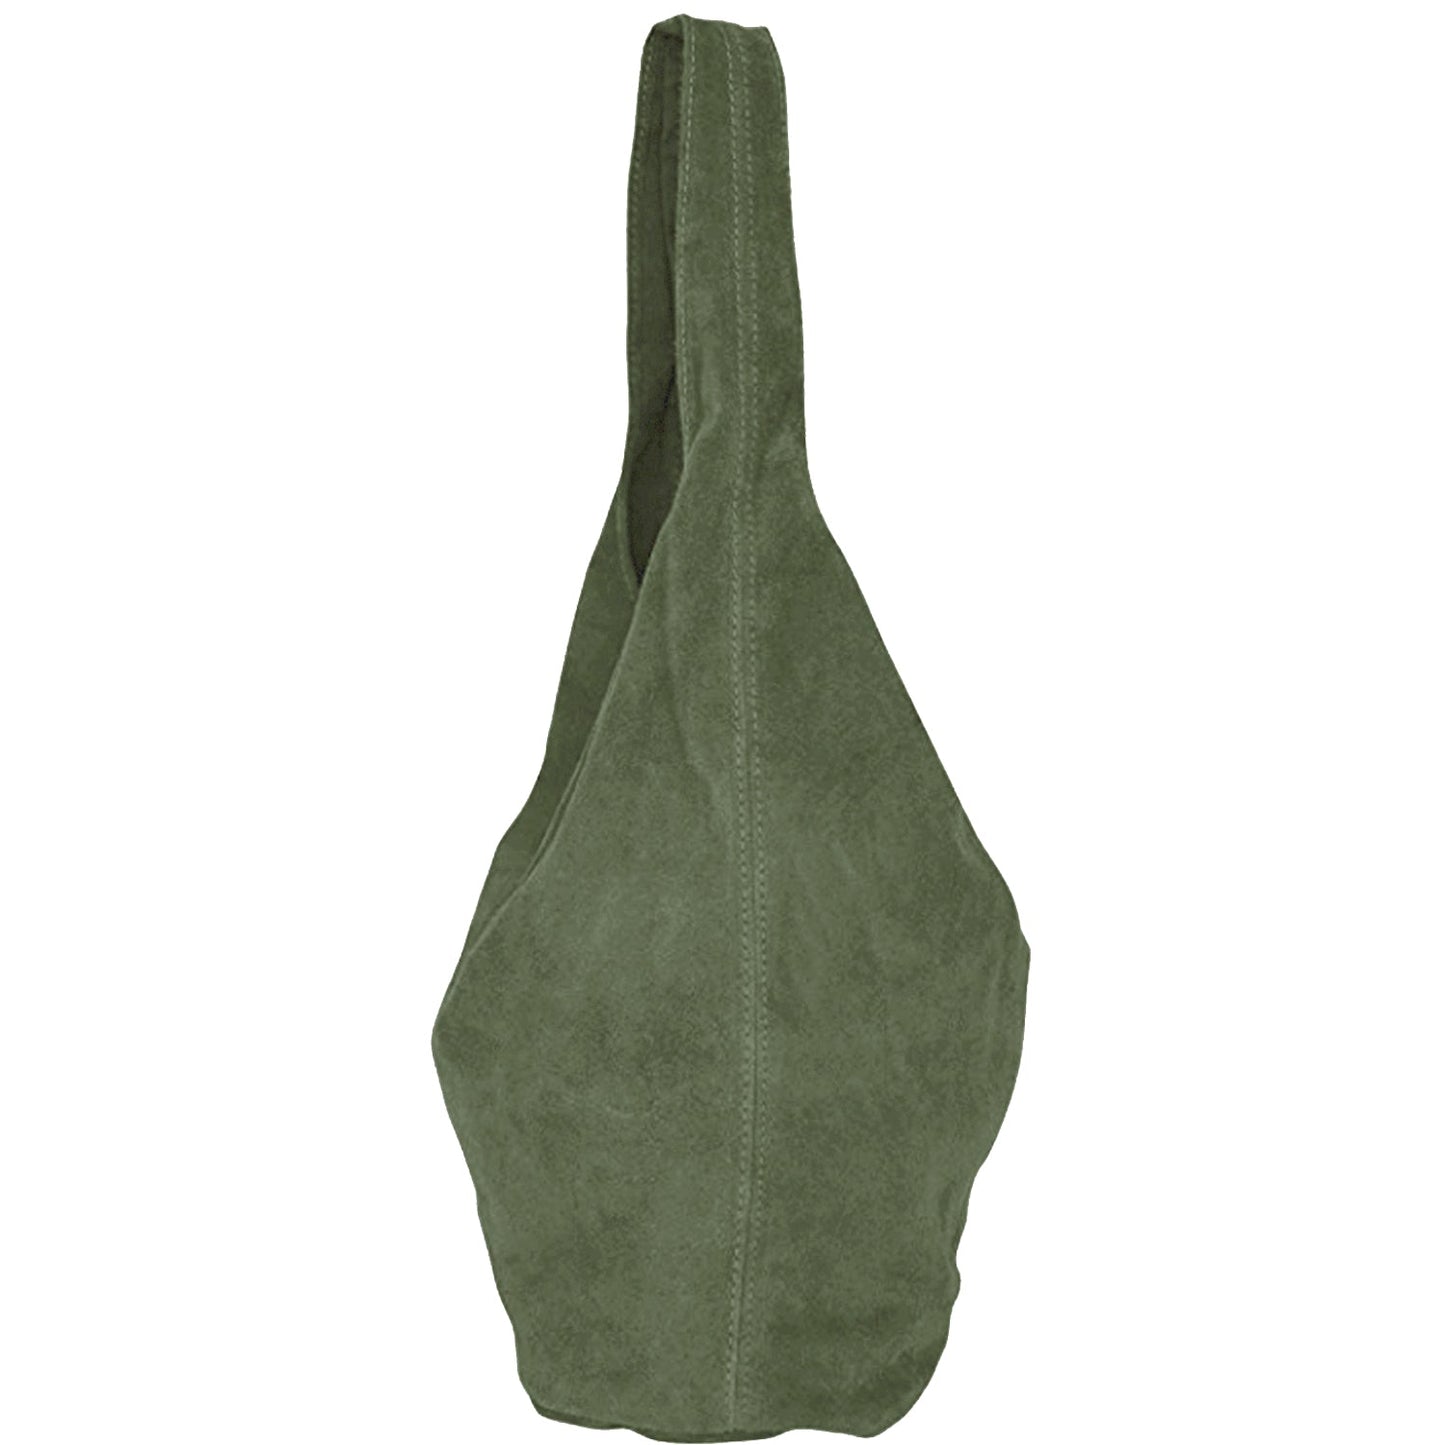 Olive Suede Leather Hobo Boho Shoulder Bag Brix Bailey Ethical Handbag Brand